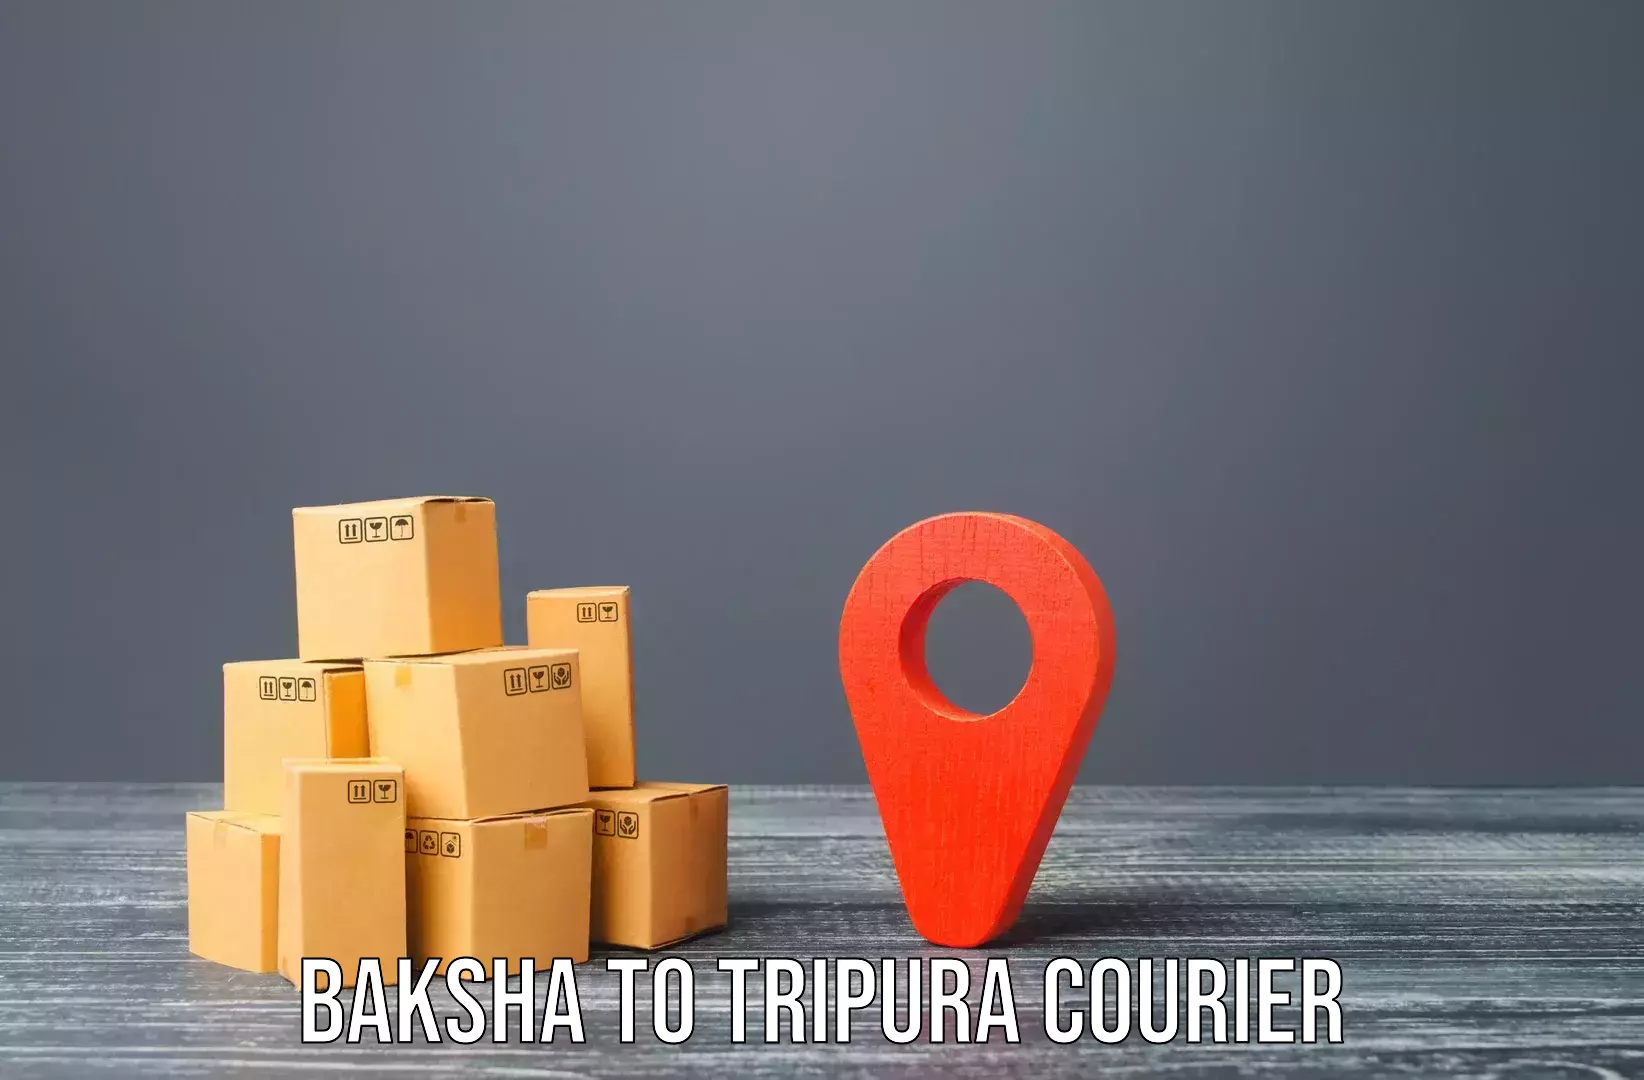 Home goods moving company Baksha to Tripura